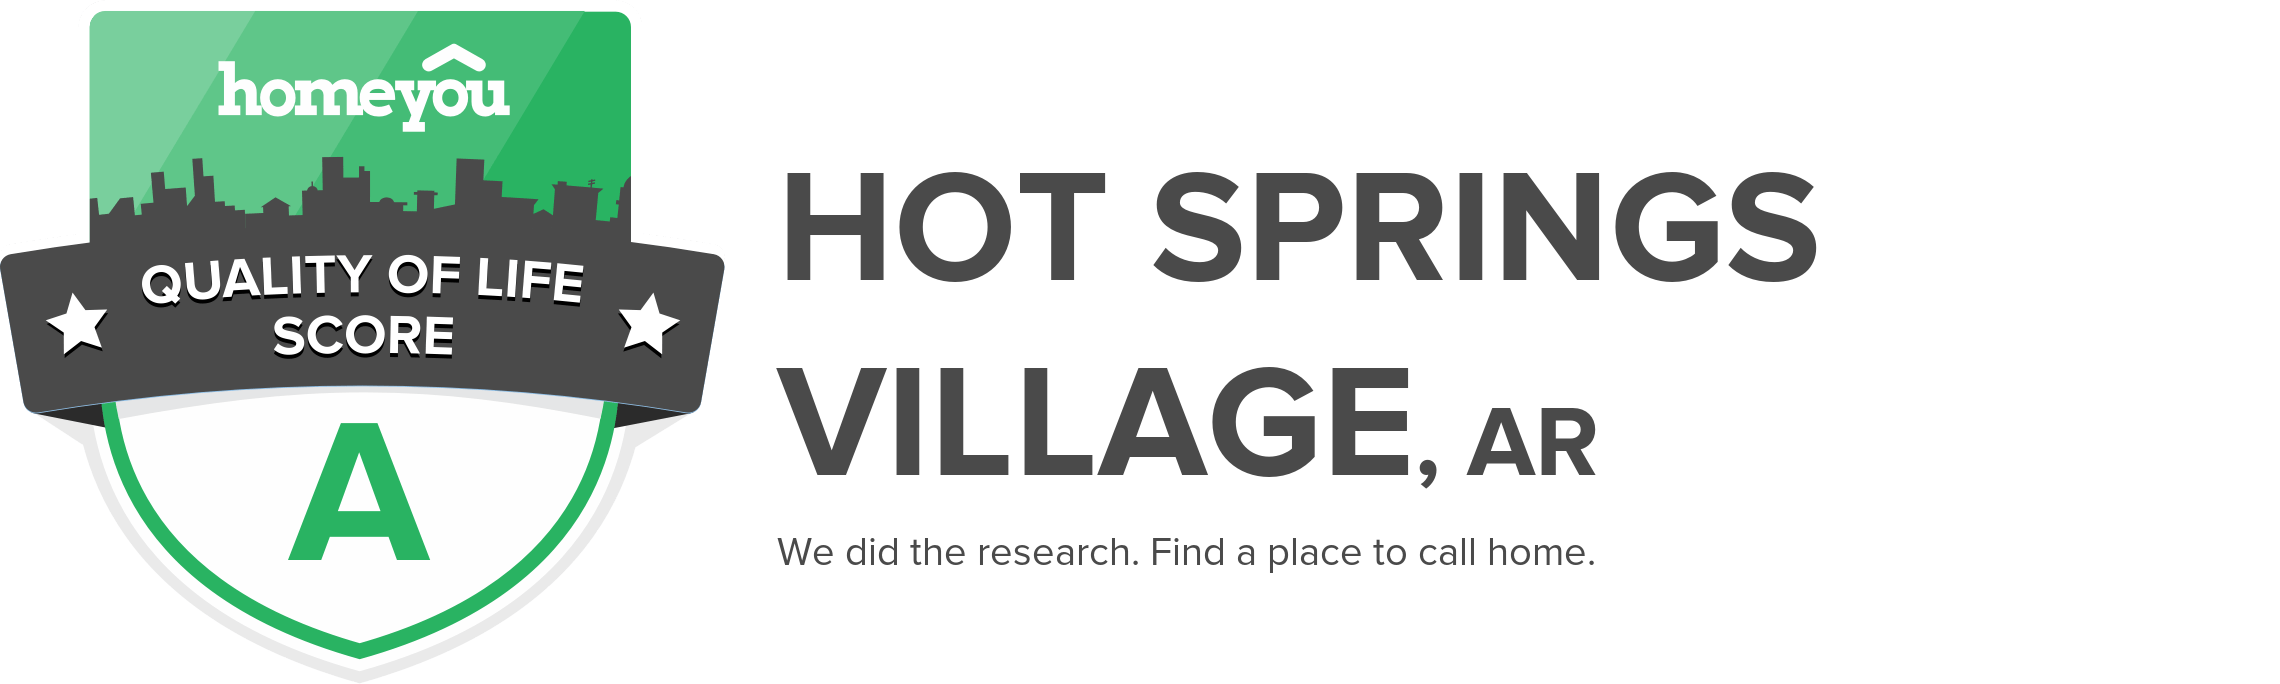 Hot Springs Village, AR